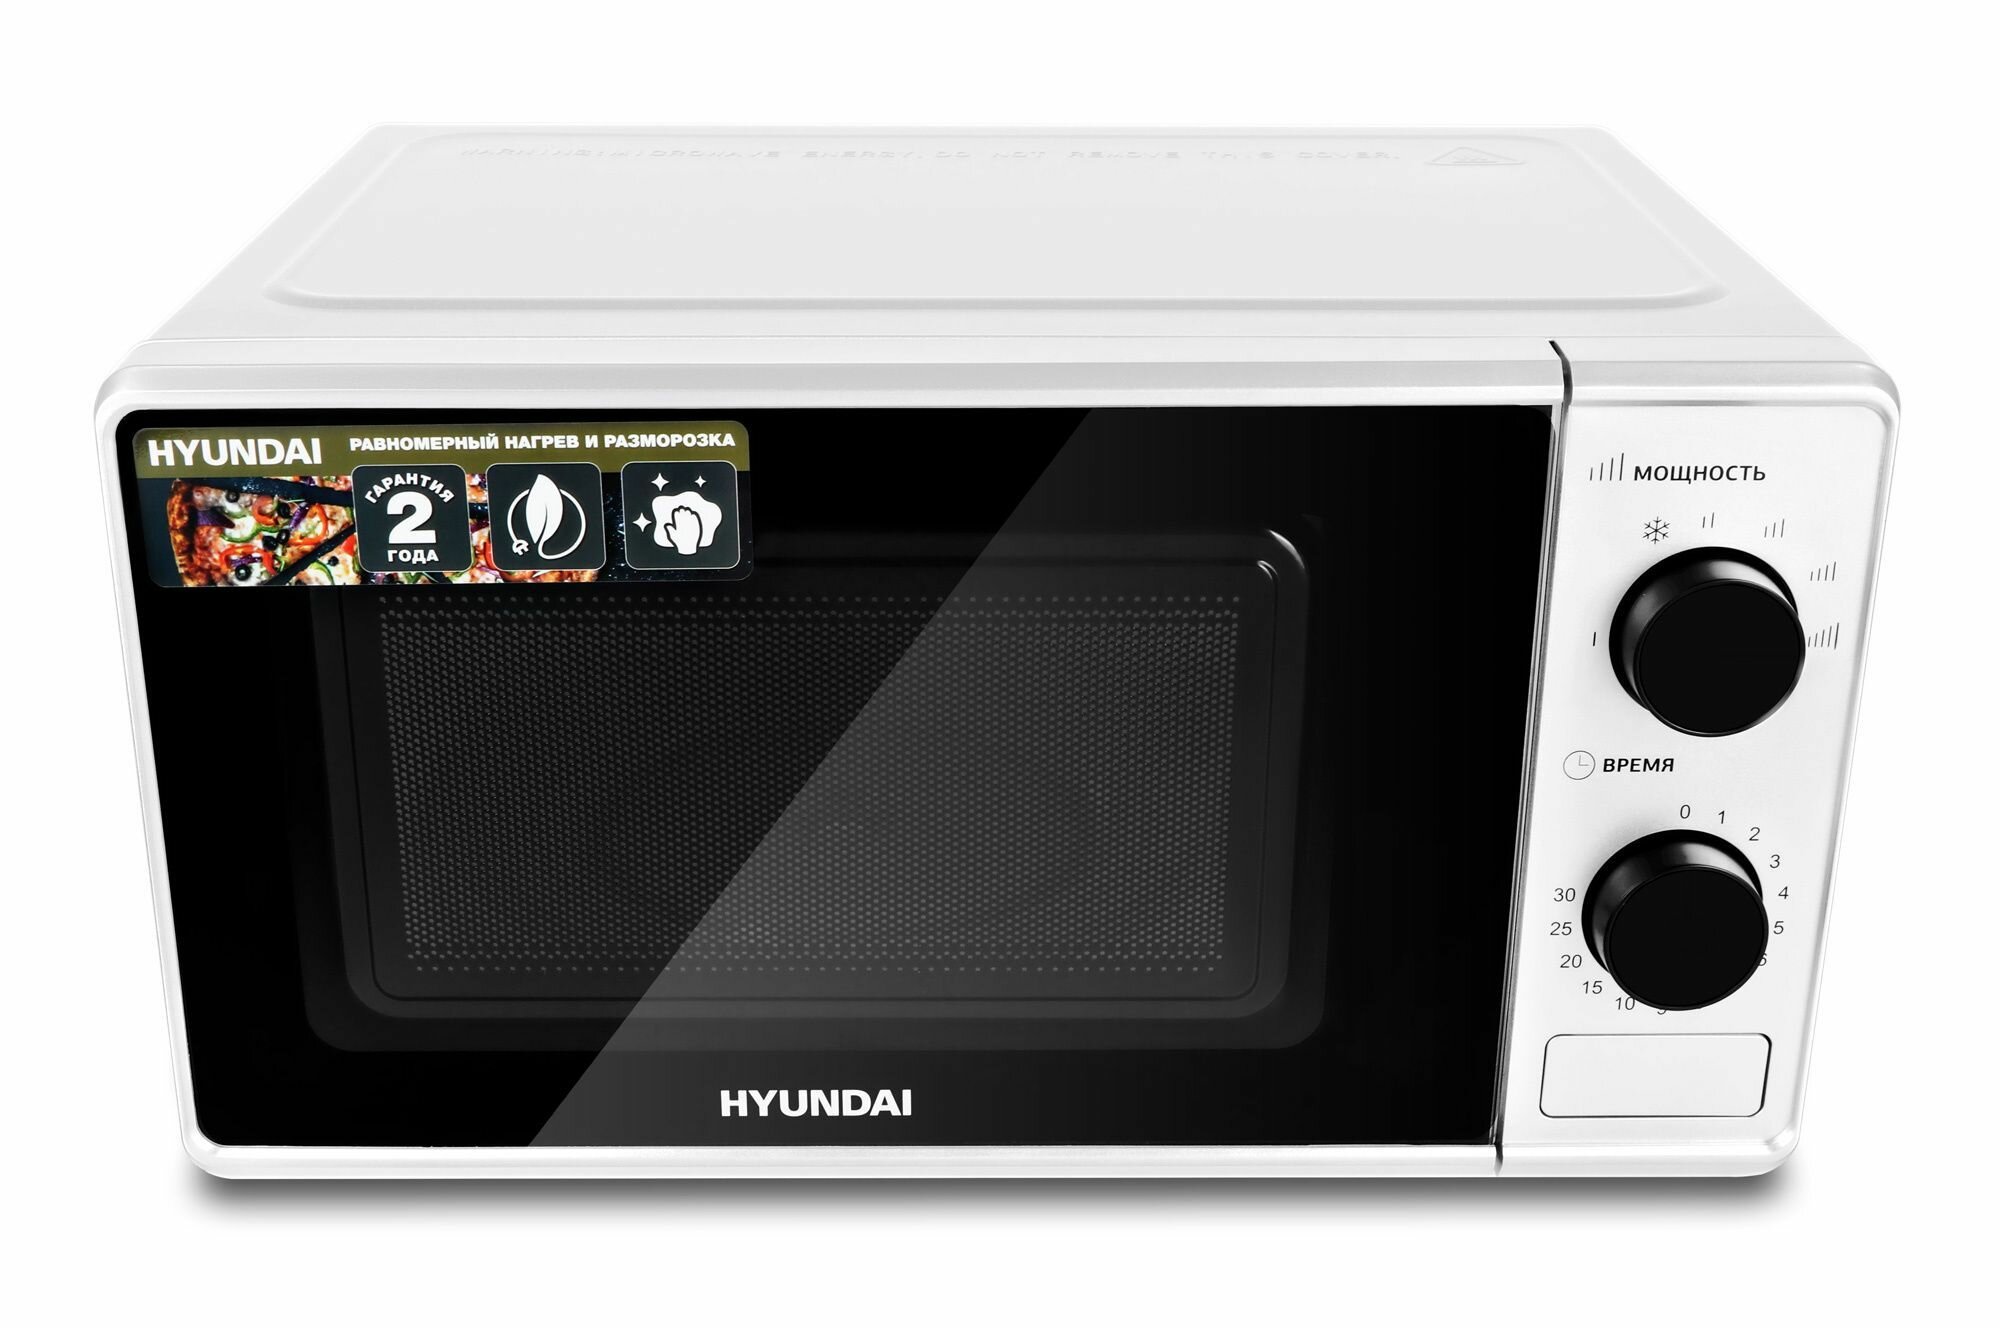 Микроволновая печь HYUNDAI HYM-M 2041 бело-черная